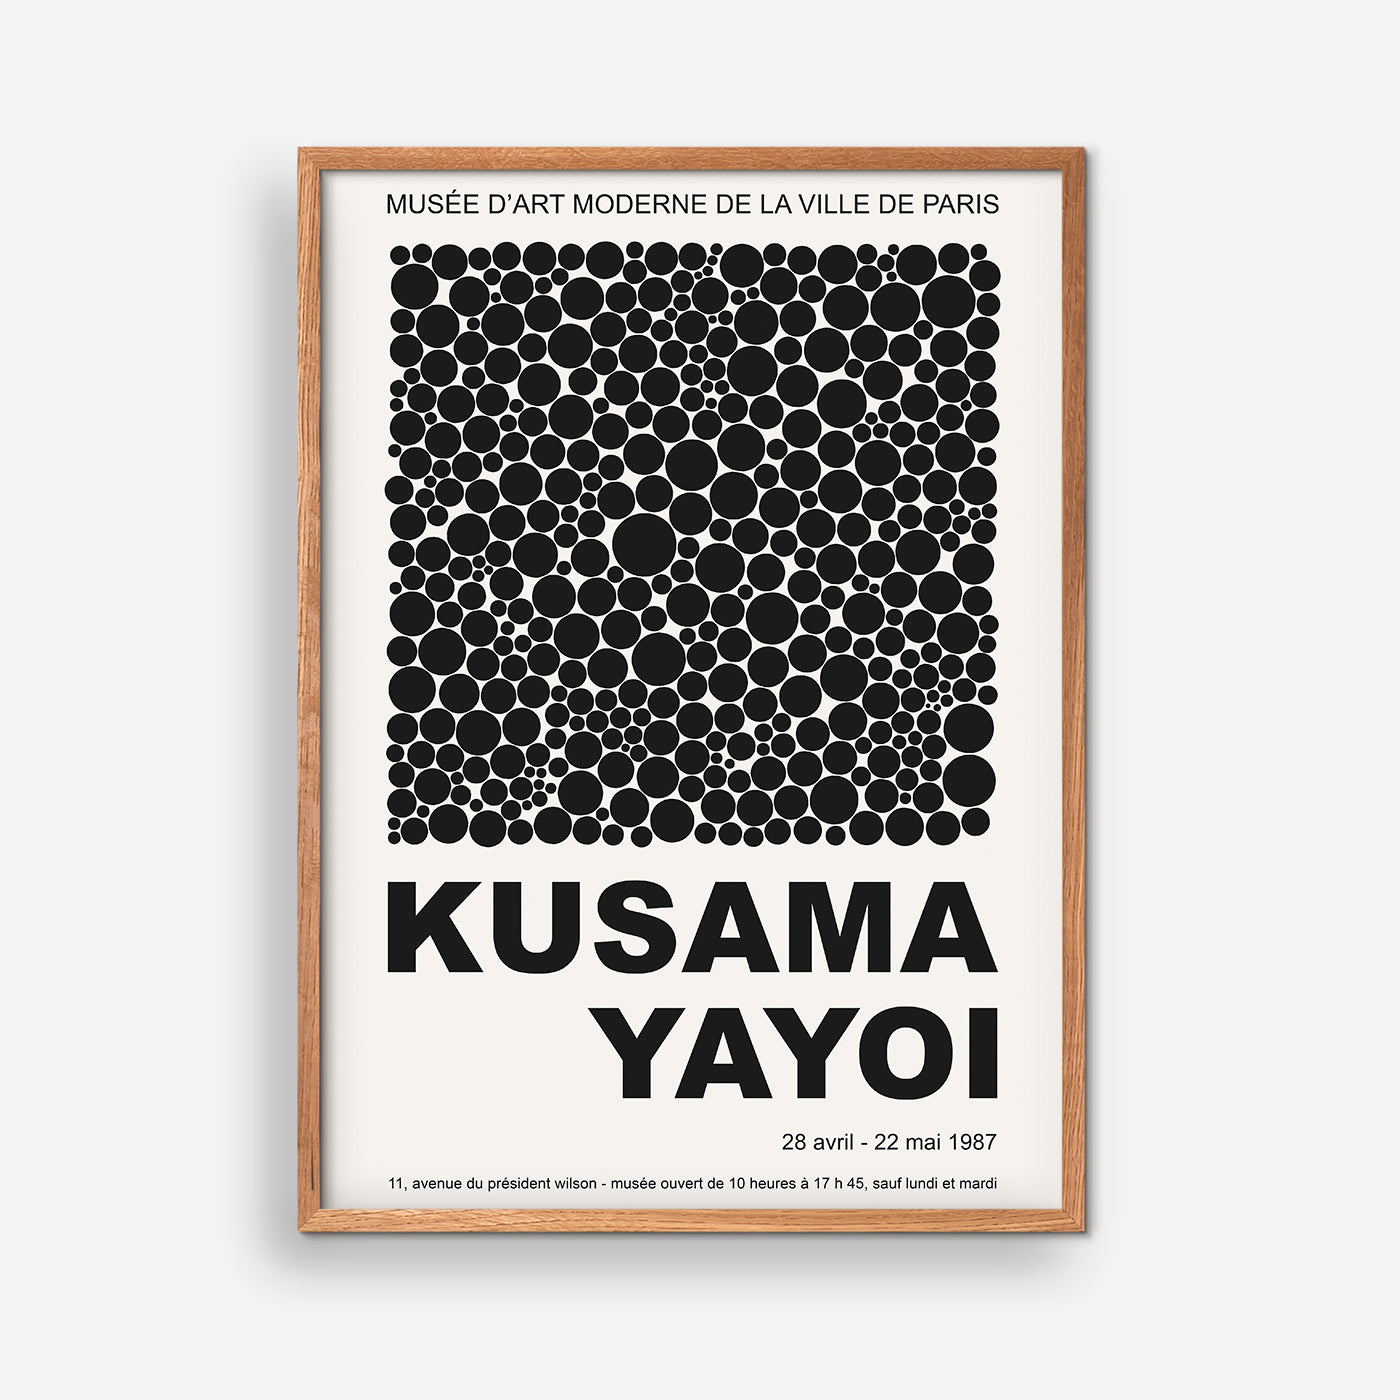 Kusama Yayoi Exhibition poster